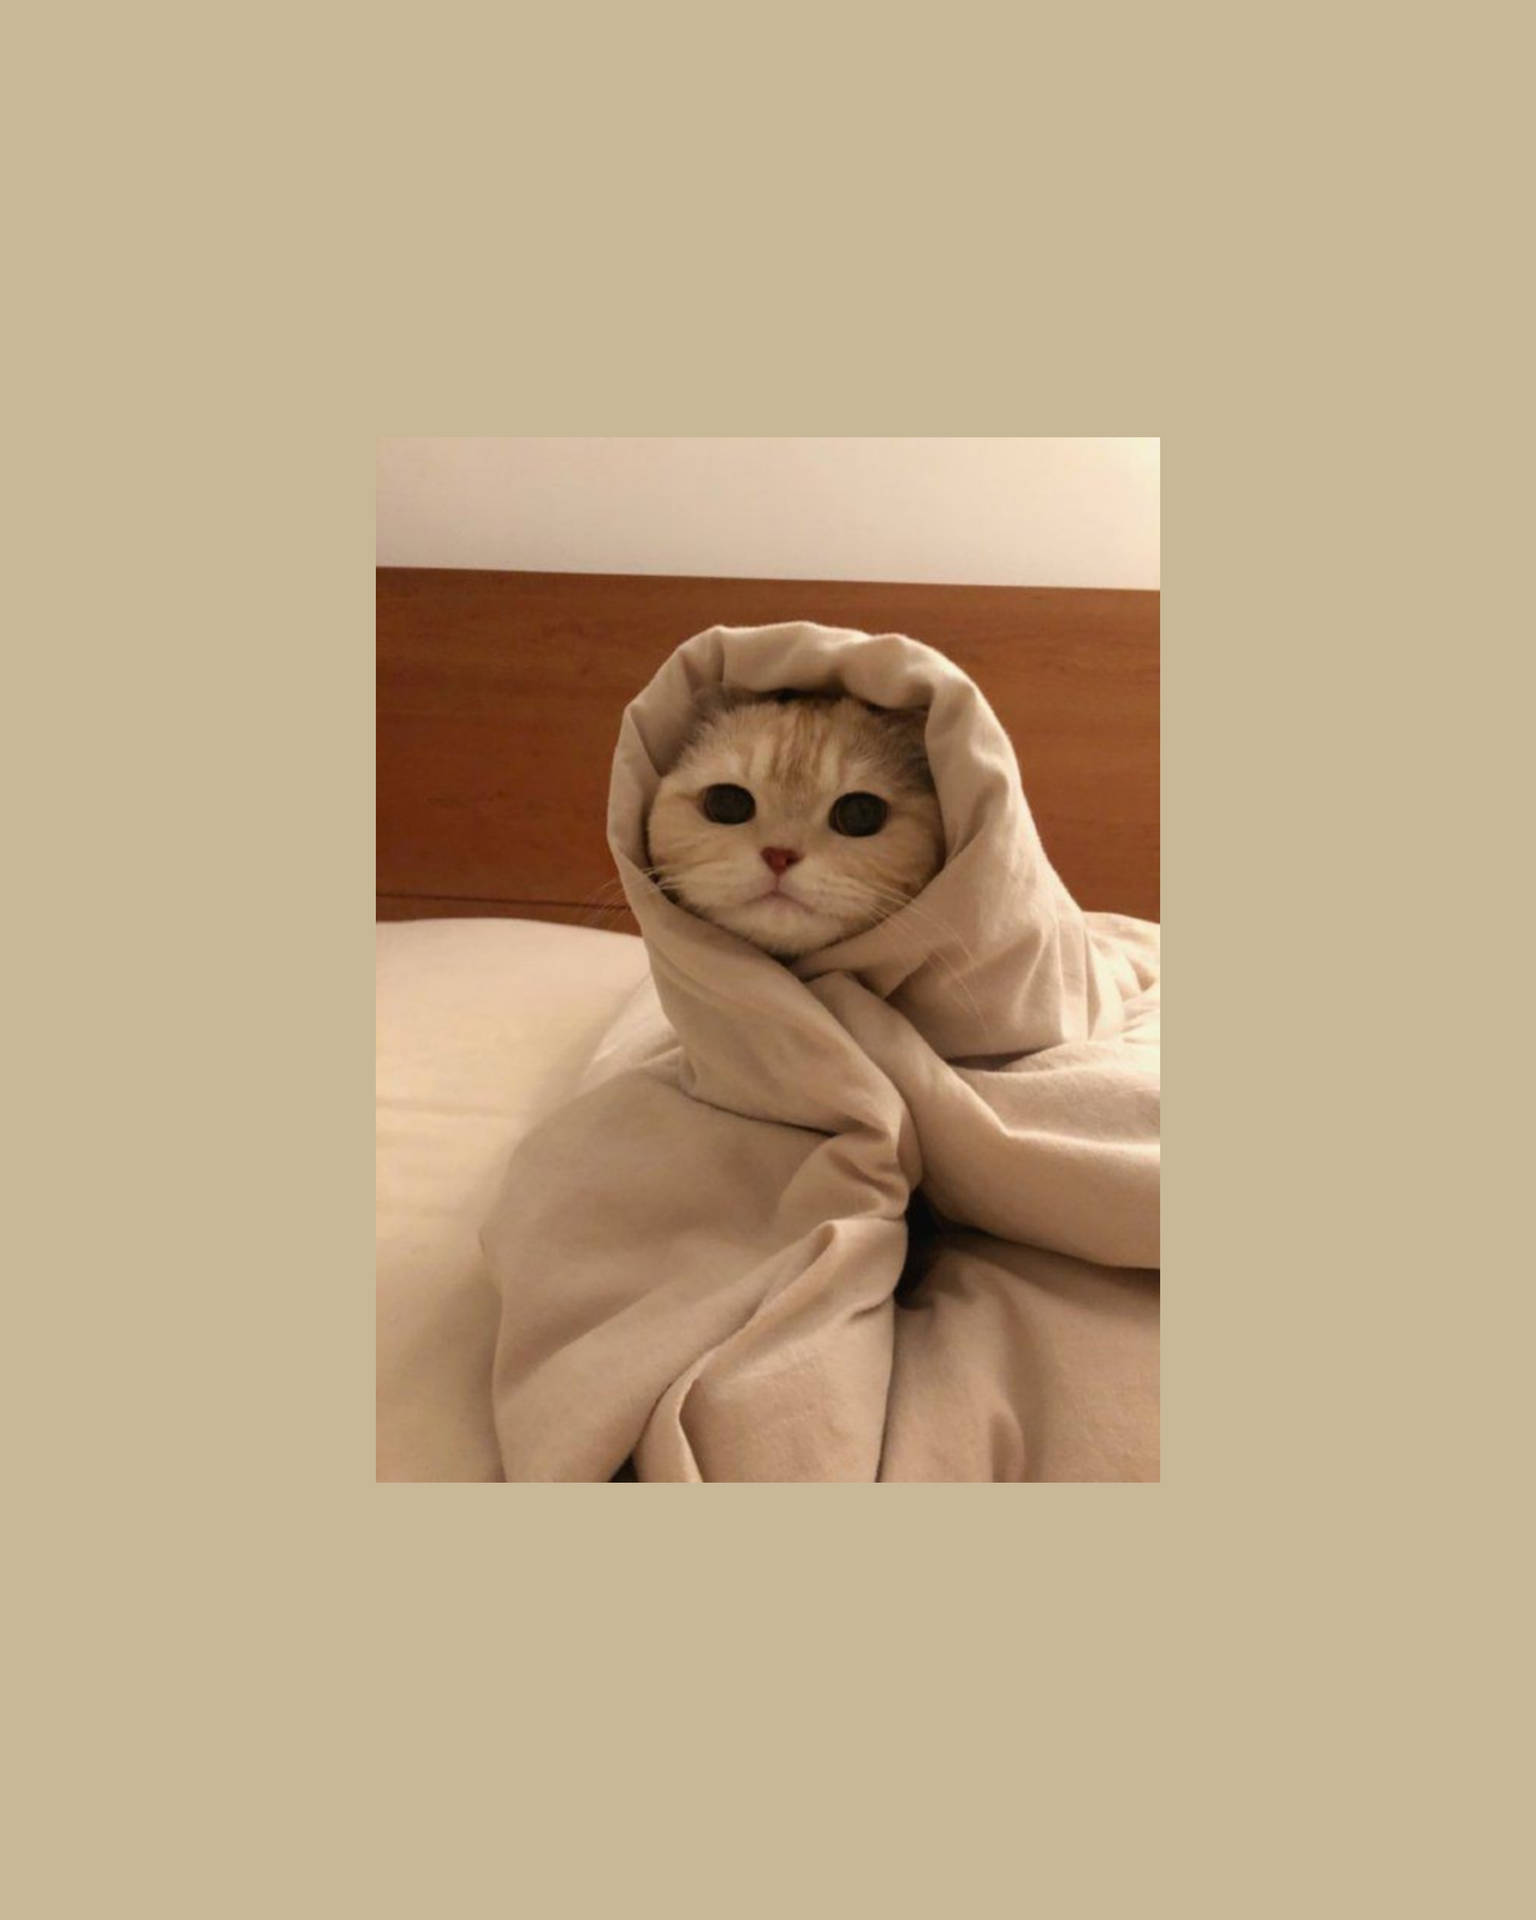 Cute Cat Aesthetic Wrapped Like A Burrito